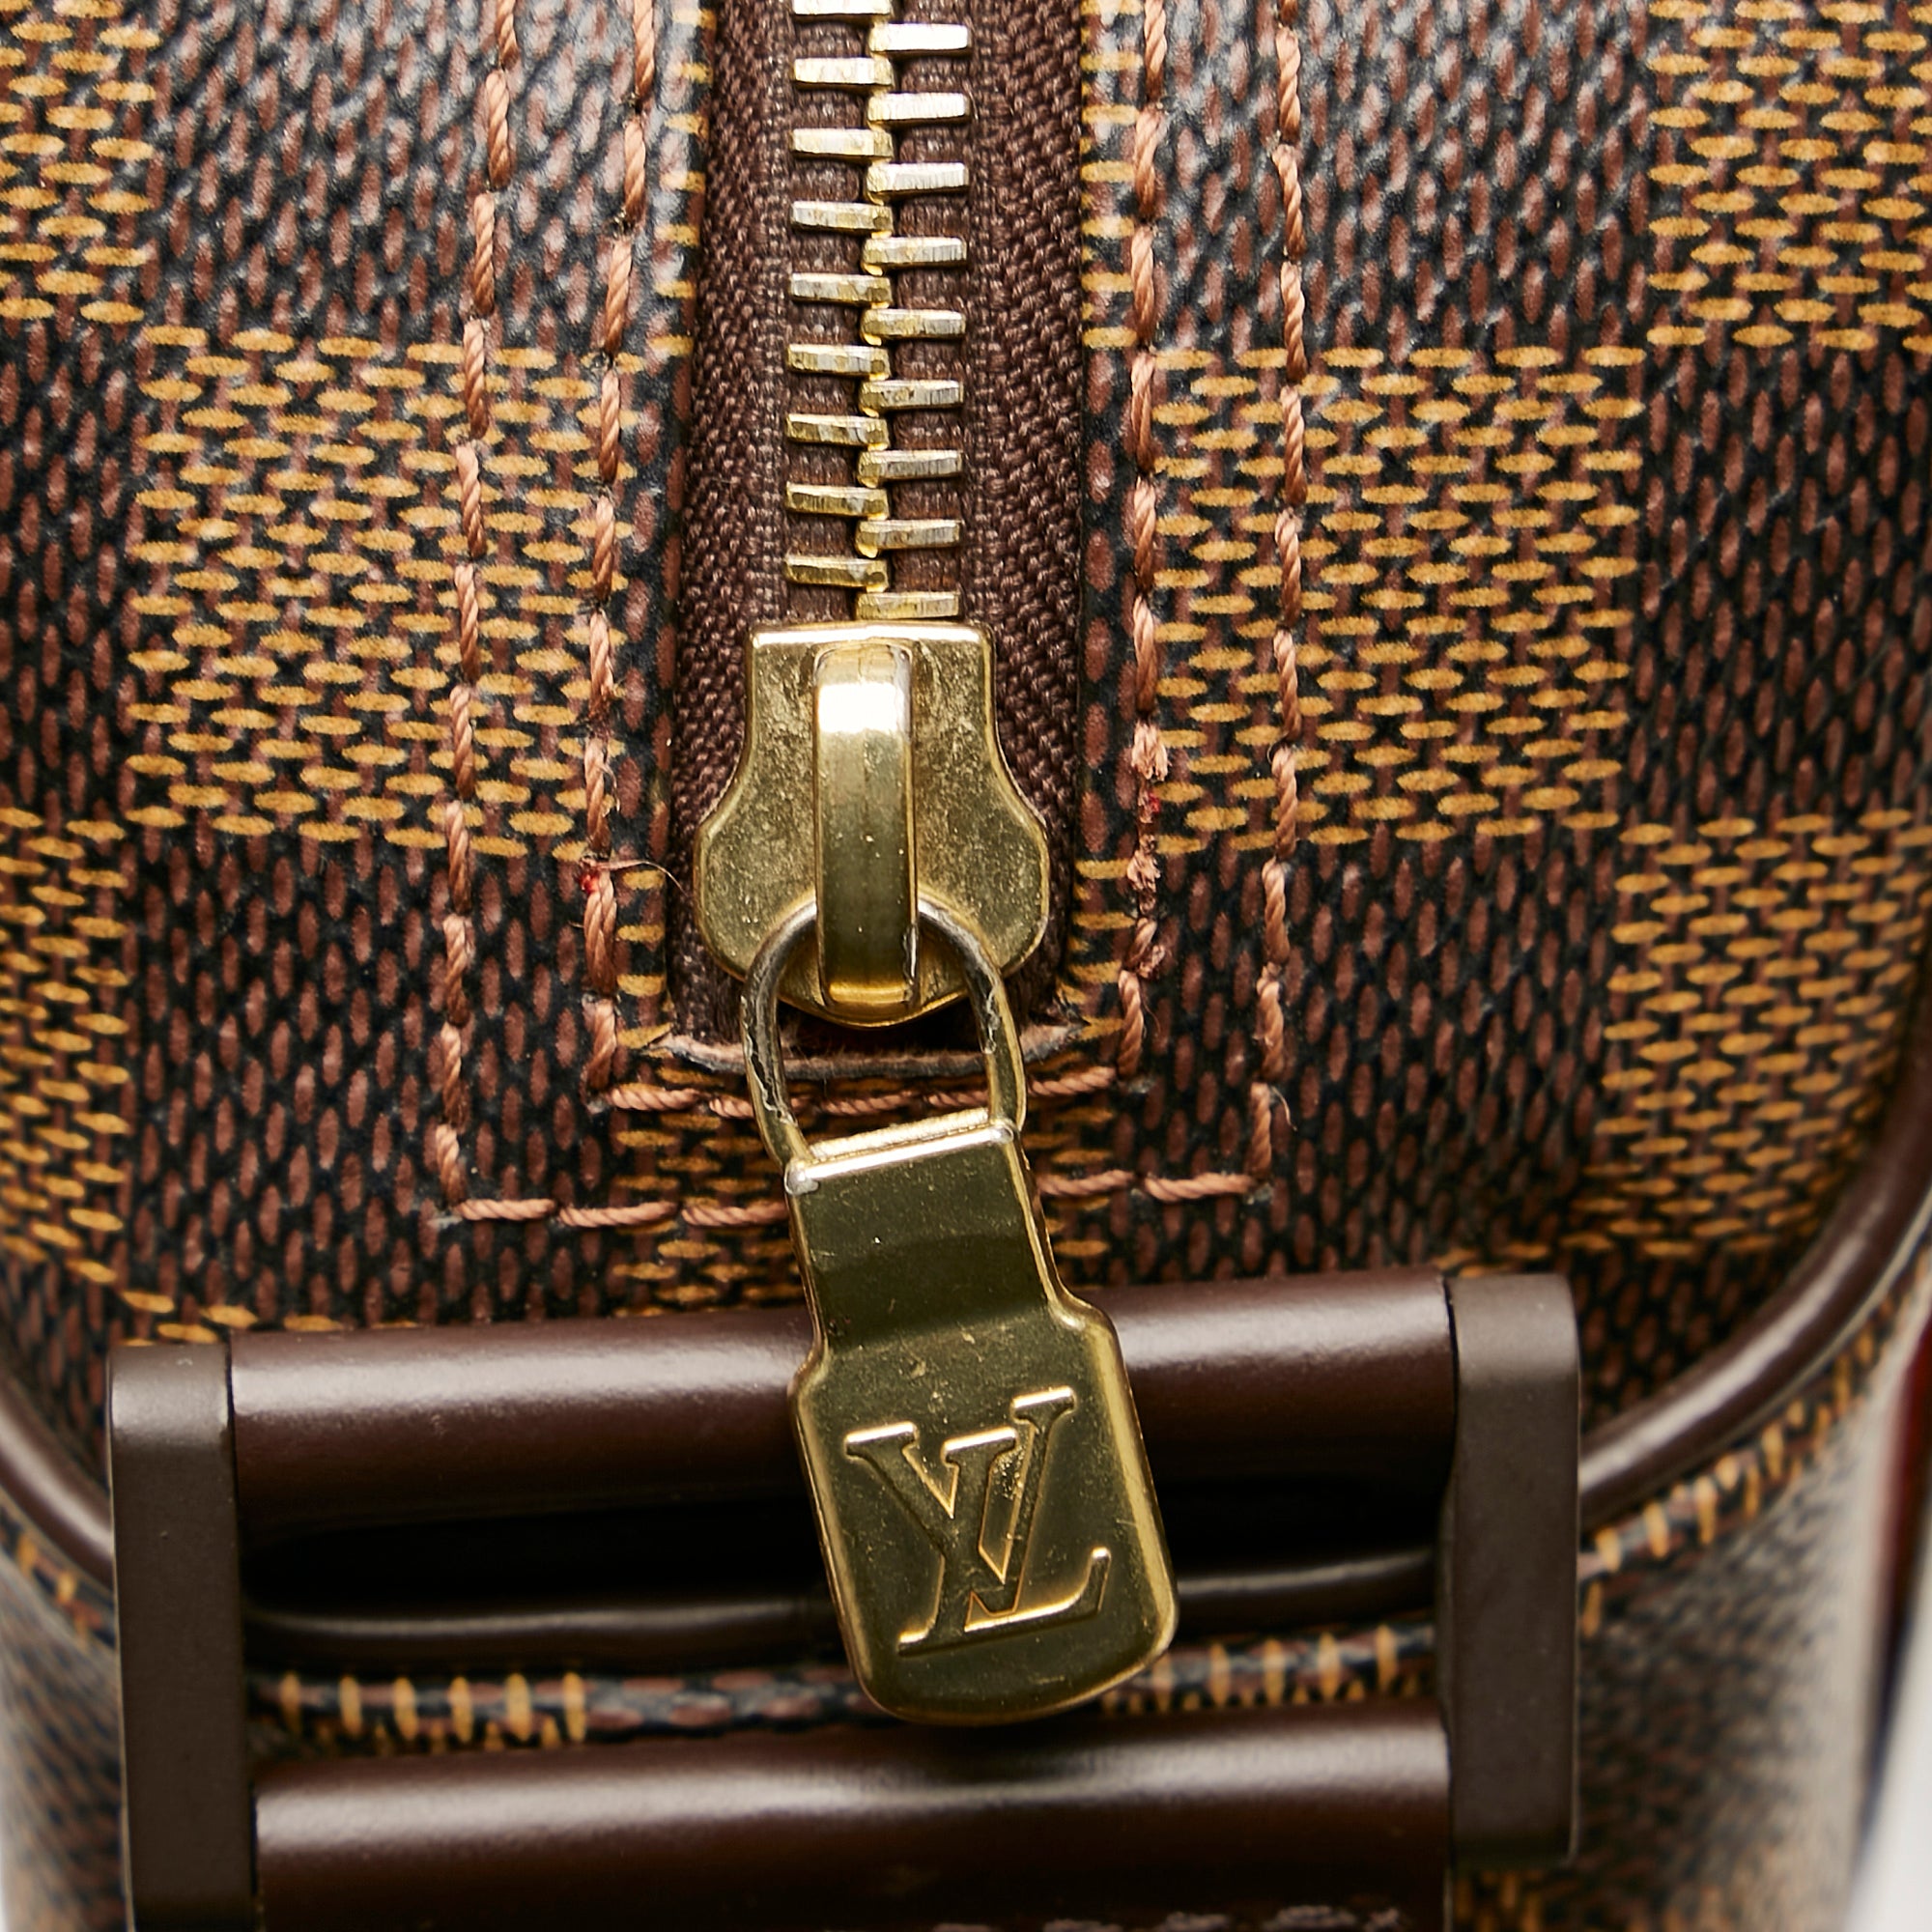 Pre-owned Louis Vuitton Olav Damier Ebene mm Brown Crossbody Bag